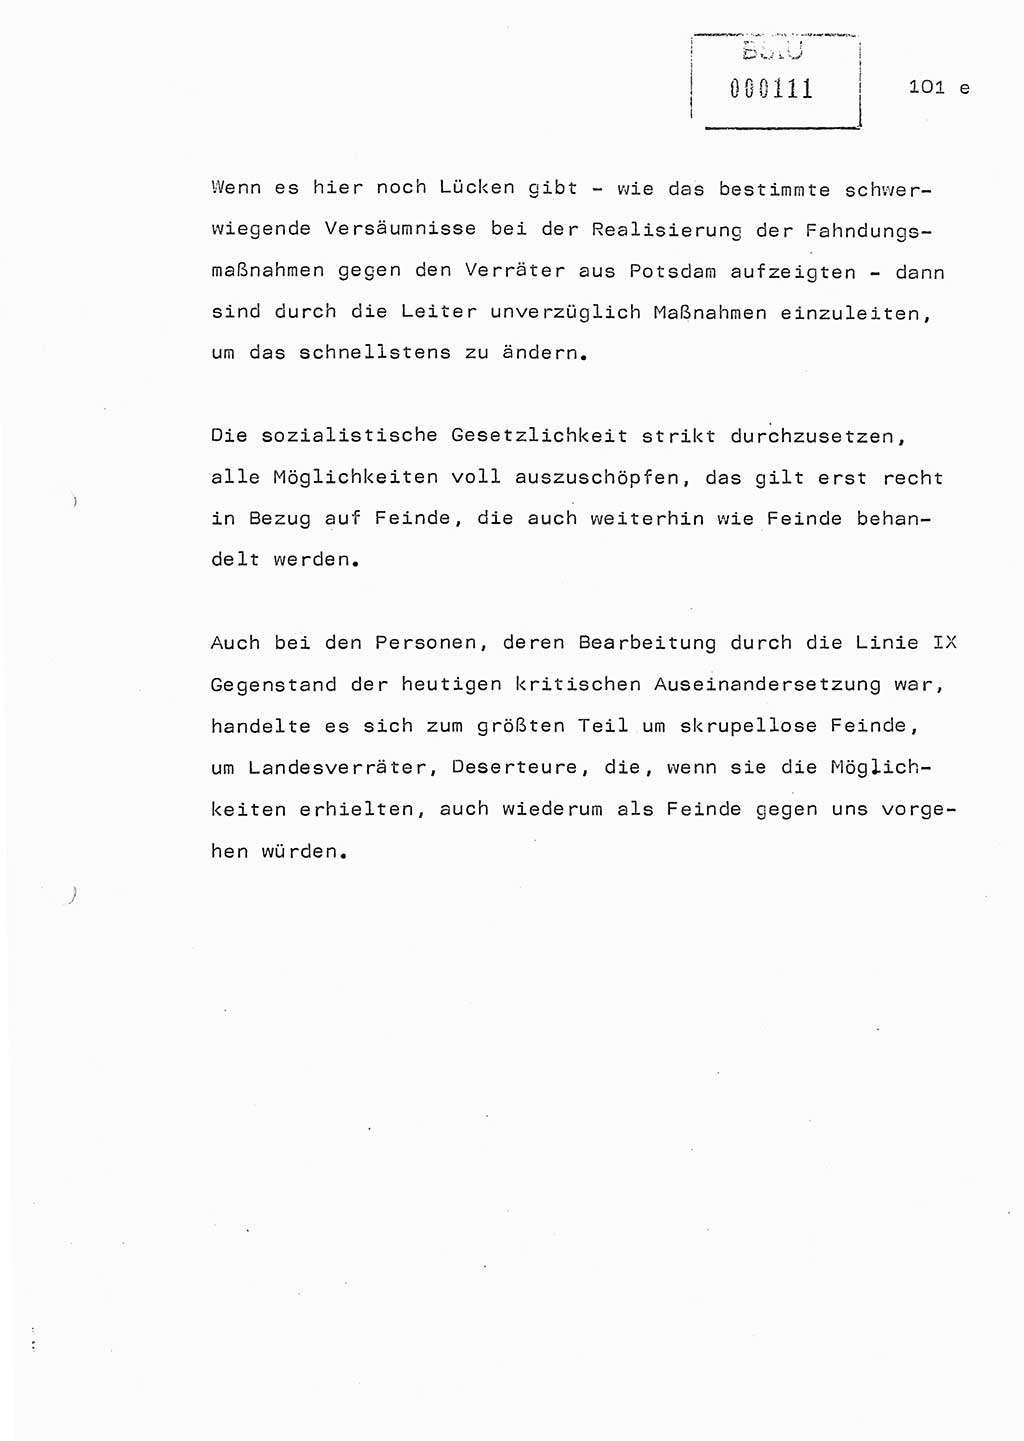 Referat (Generaloberst Erich Mielke) auf der Zentralen Dienstkonferenz am 24.5.1979 [Ministerium für Staatssicherheit (MfS), Deutsche Demokratische Republik (DDR), Der Minister], Berlin 1979, Seite 101/5 (Ref. DK DDR MfS Min. /79 1979, S. 101/5)